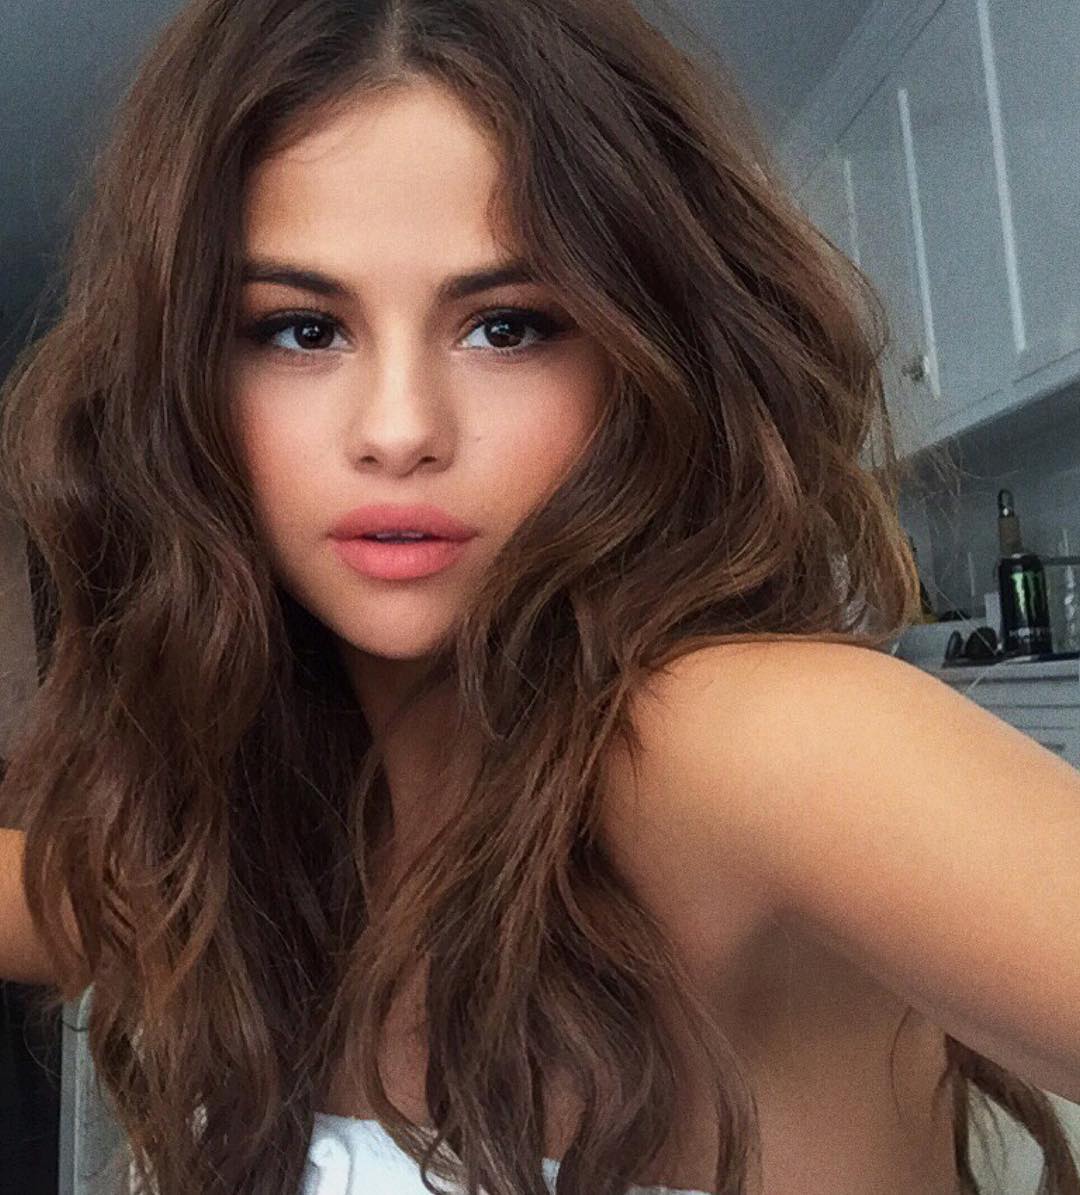 Kiểu tóc của Selena Gomez luôn là sự lựa chọn hàng đầu cho các nàng yêu thời trang. Với nhiều kiểu tóc khác nhau, Selena Gomez luôn sáng tạo và đa dạng. Nếu muốn học hỏi và chọn cho mình một kiểu tóc mới, bạn hãy tham khảo qua các hình ảnh liên quan đến kiểu tóc của Selena Gomez để được cập nhật những kiểu tóc mới nhất!